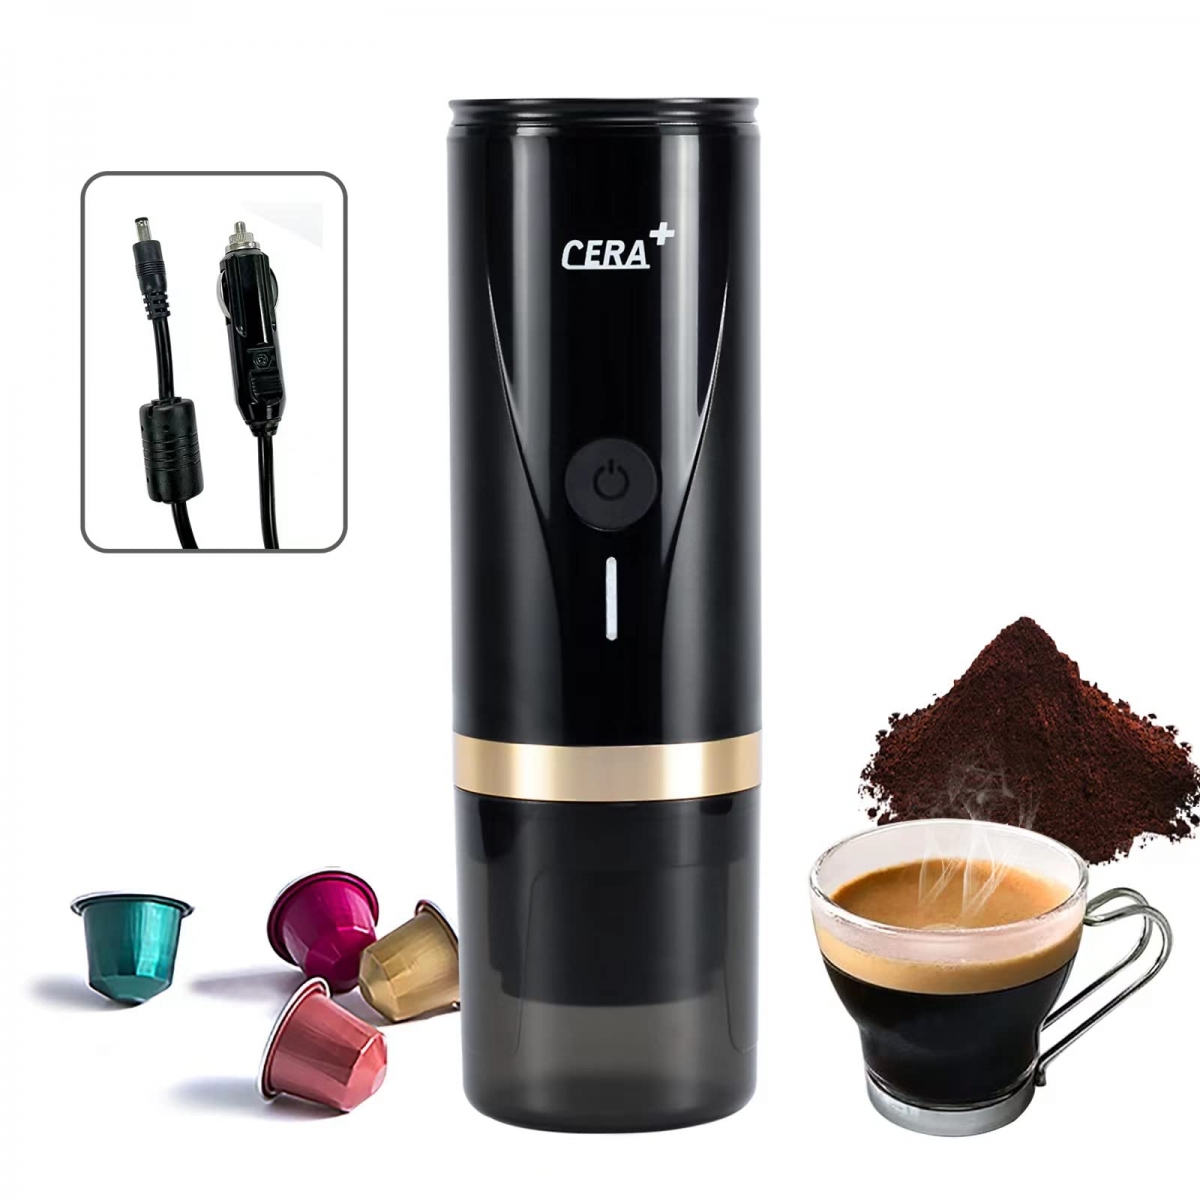 Portable car coffee maker (PCM02)-CERA+| Portable Espresso Maker,Smart Warming Mug